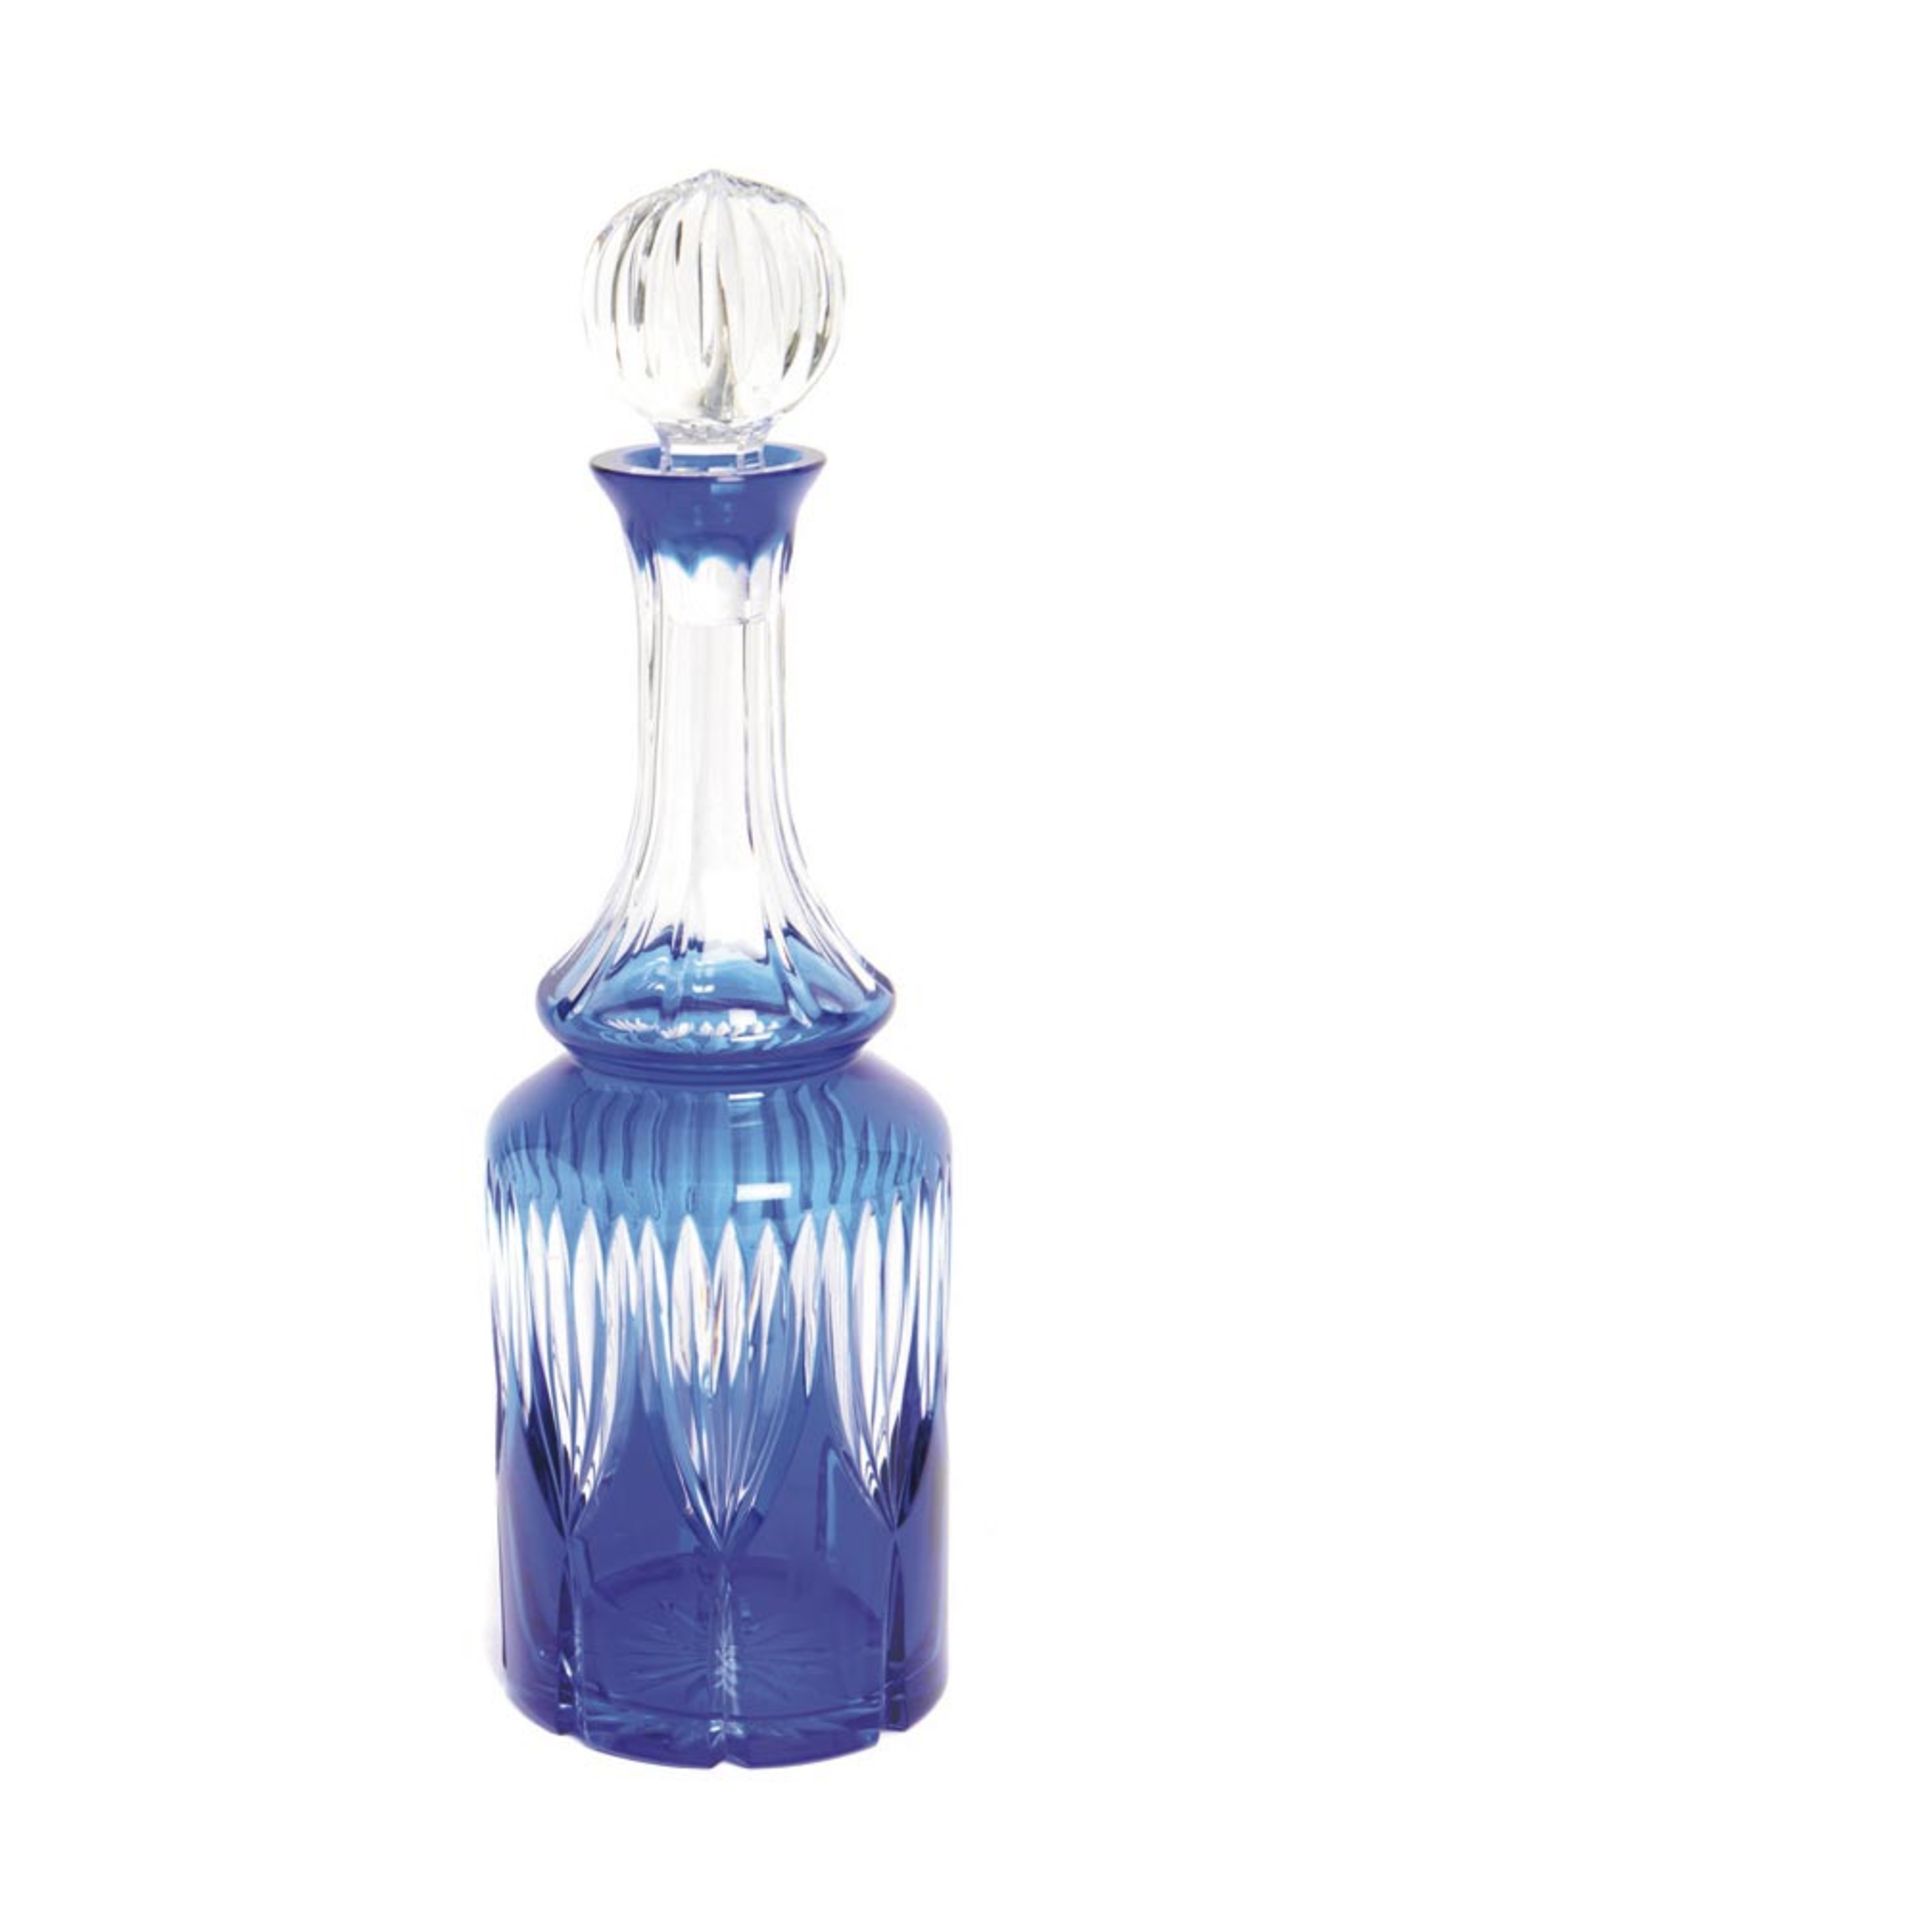 Glass decanter Botella licorera en cristal tallado y doblado en tonalidades azul y transparente